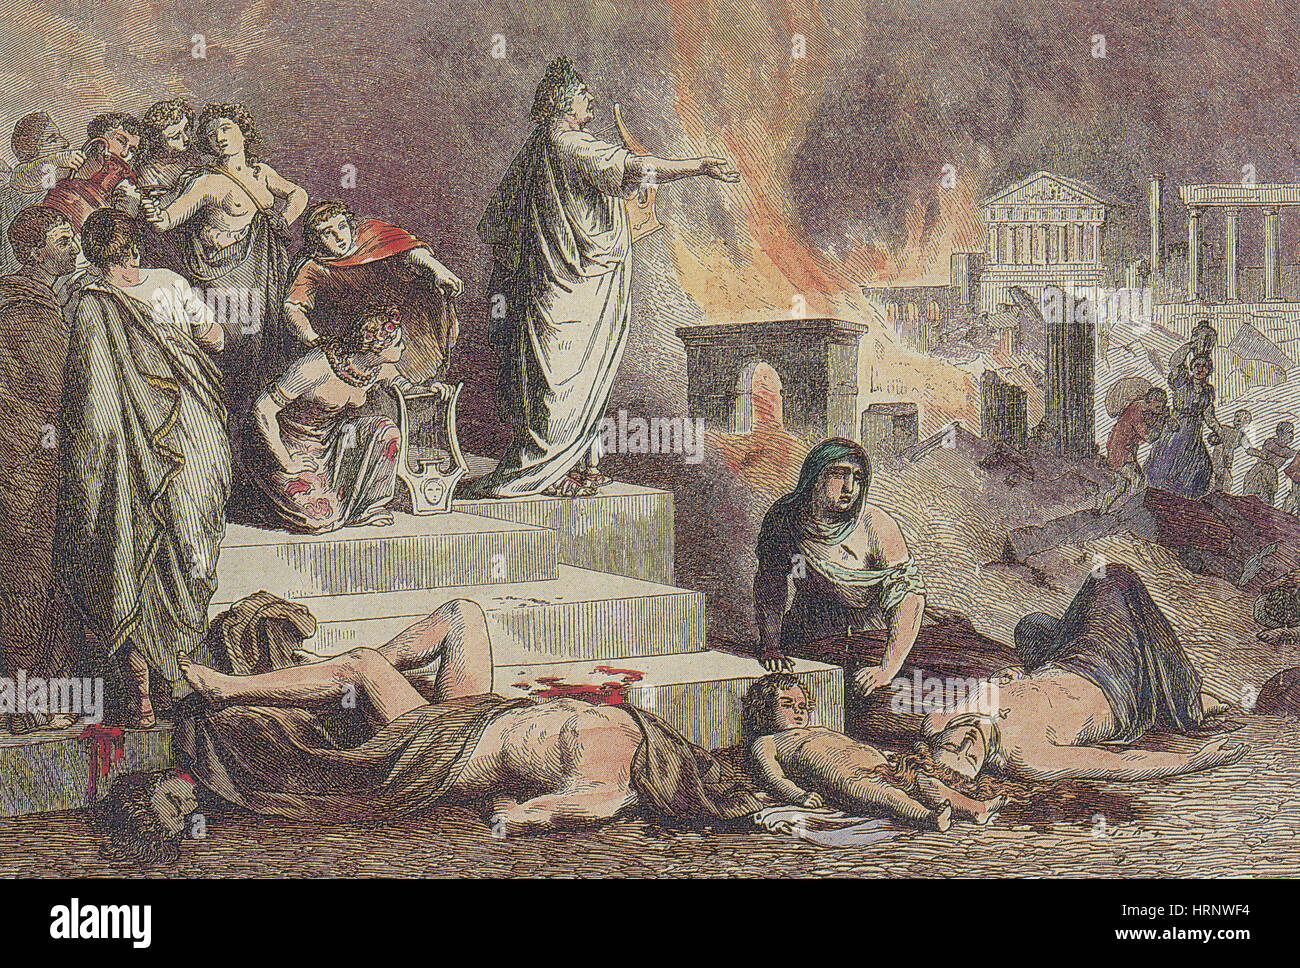 Nero y el gran incendio de Roma, 64 AD Foto de stock